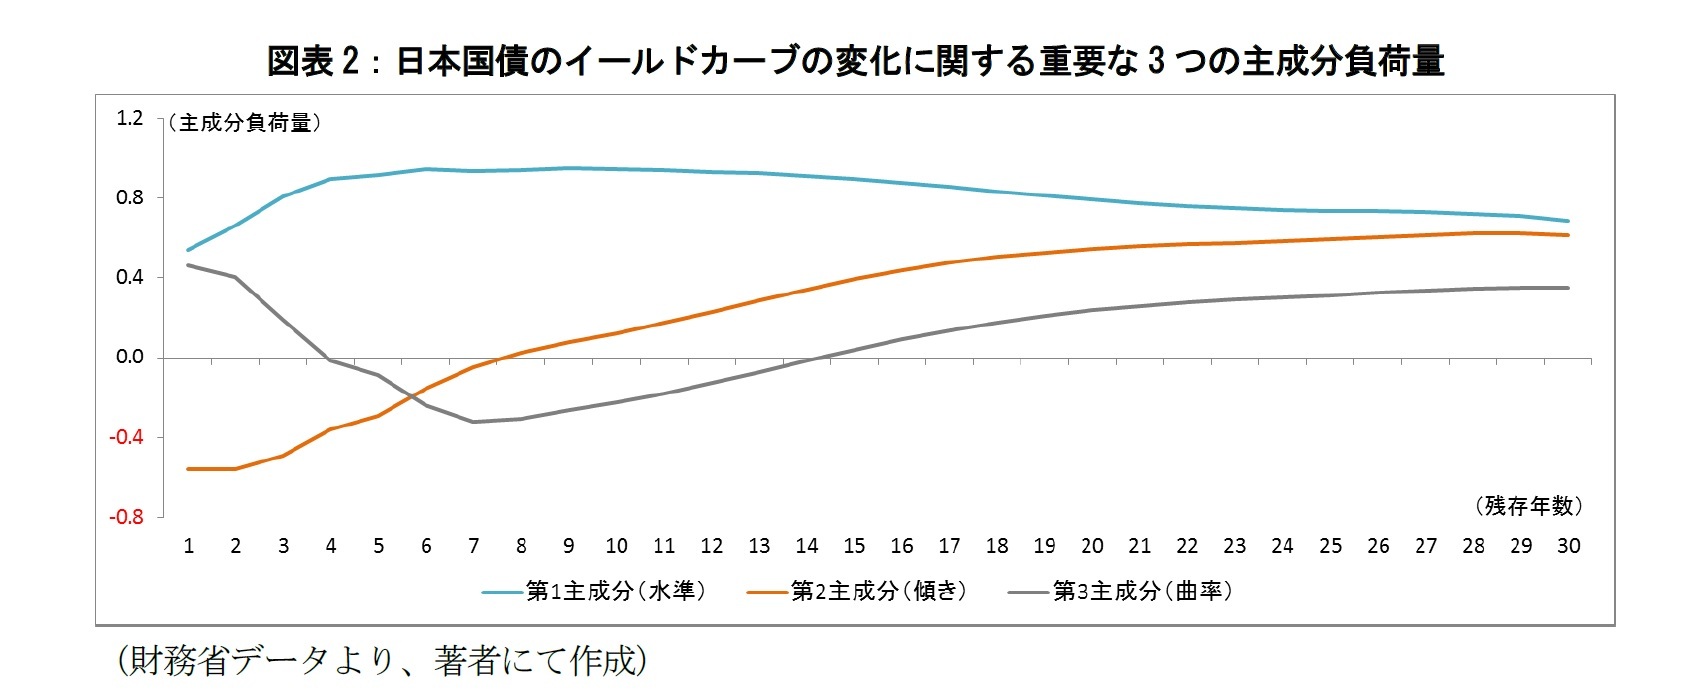 図表2：日本国債のイールドカーブの変化に関する重要な3つの主成分負荷量